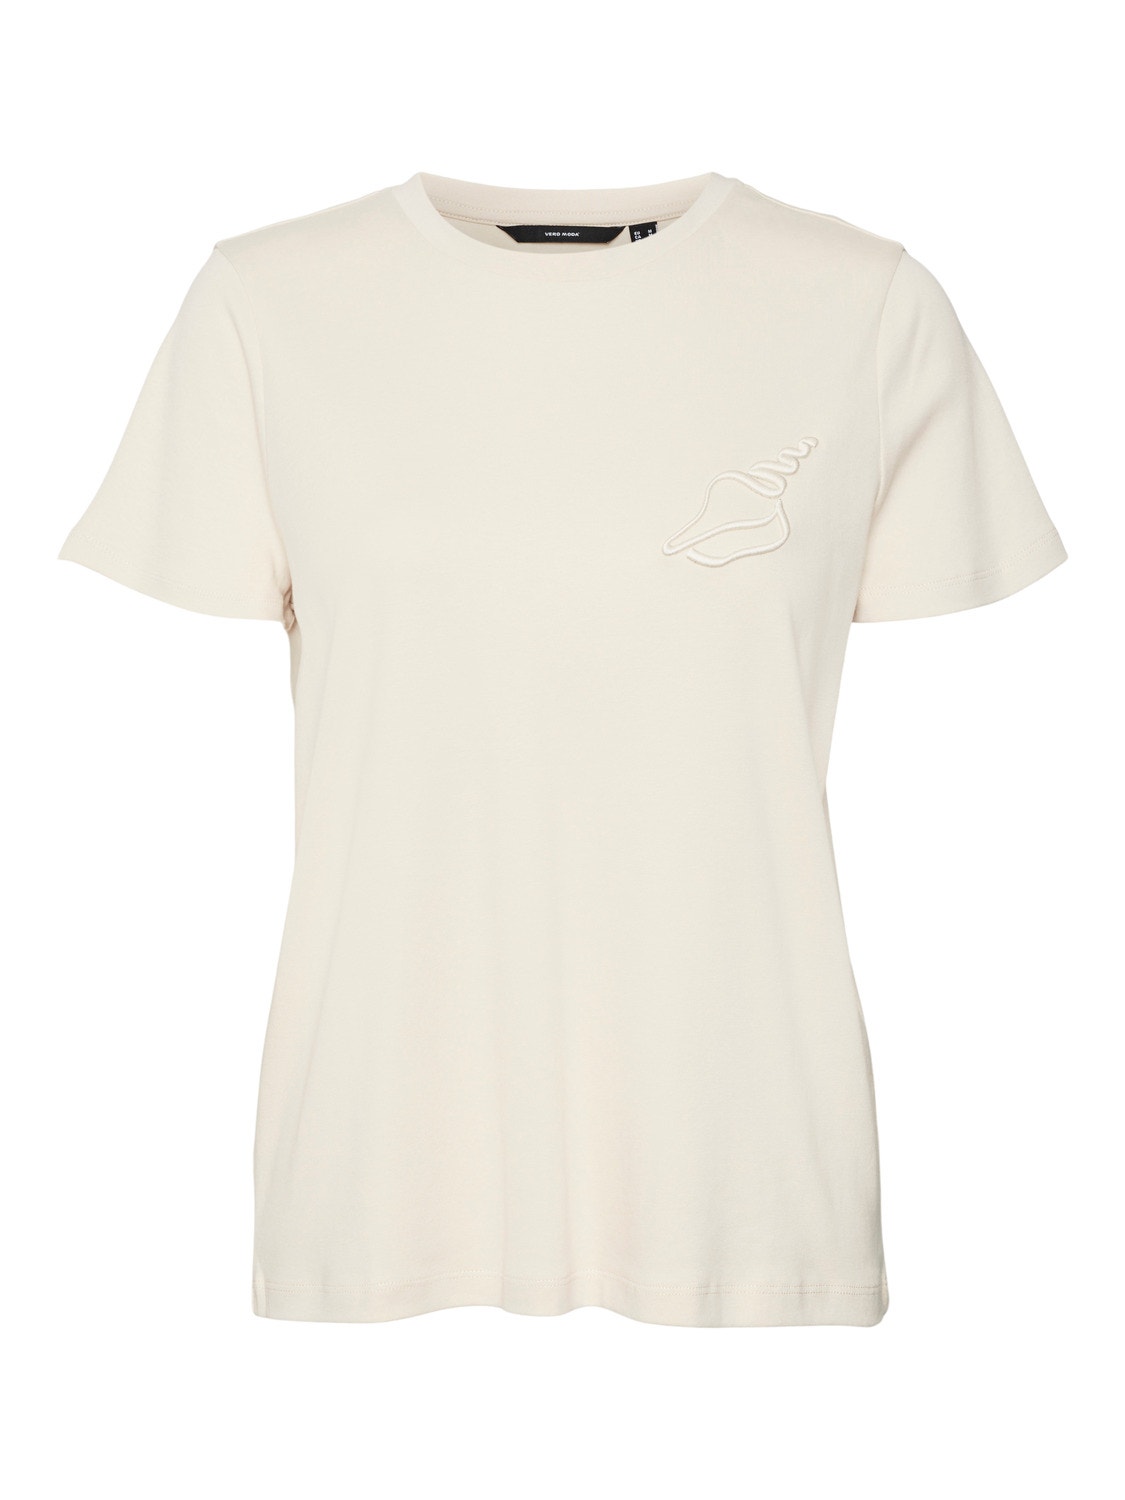 Vero Moda VMFRANCIS T-shirt -Sand Dollar - 10312598